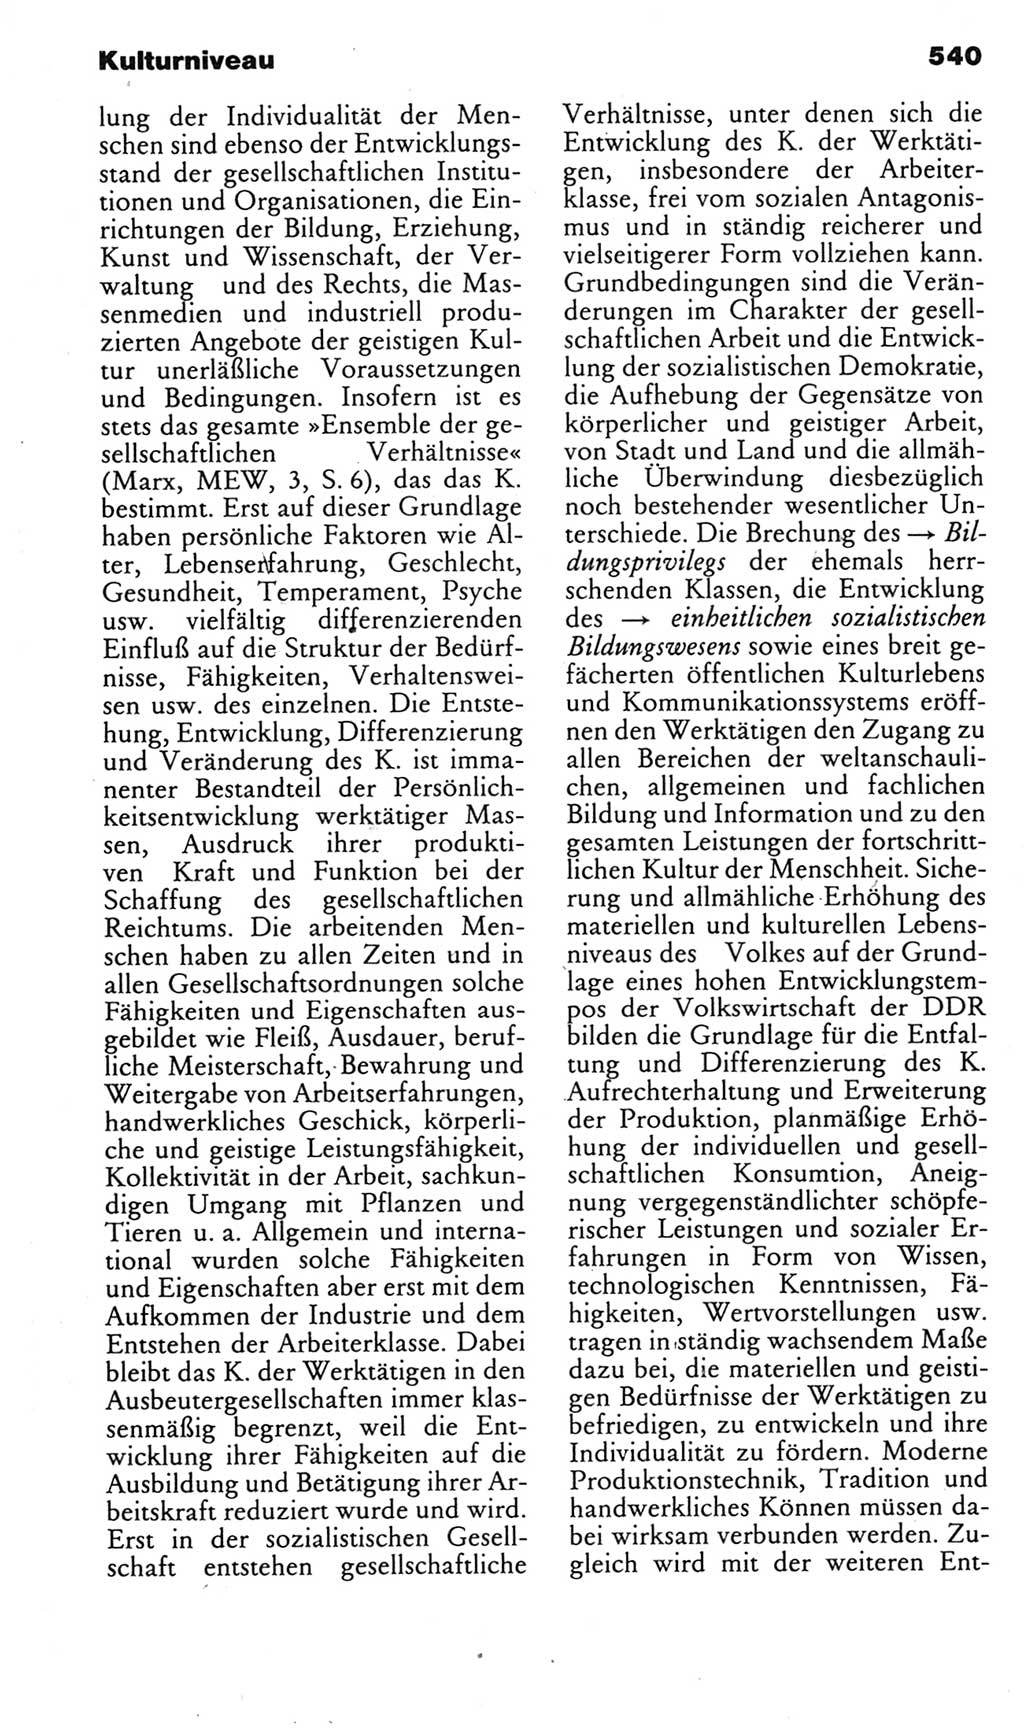 Kleines politisches Wörterbuch [Deutsche Demokratische Republik (DDR)] 1985, Seite 540 (Kl. pol. Wb. DDR 1985, S. 540)